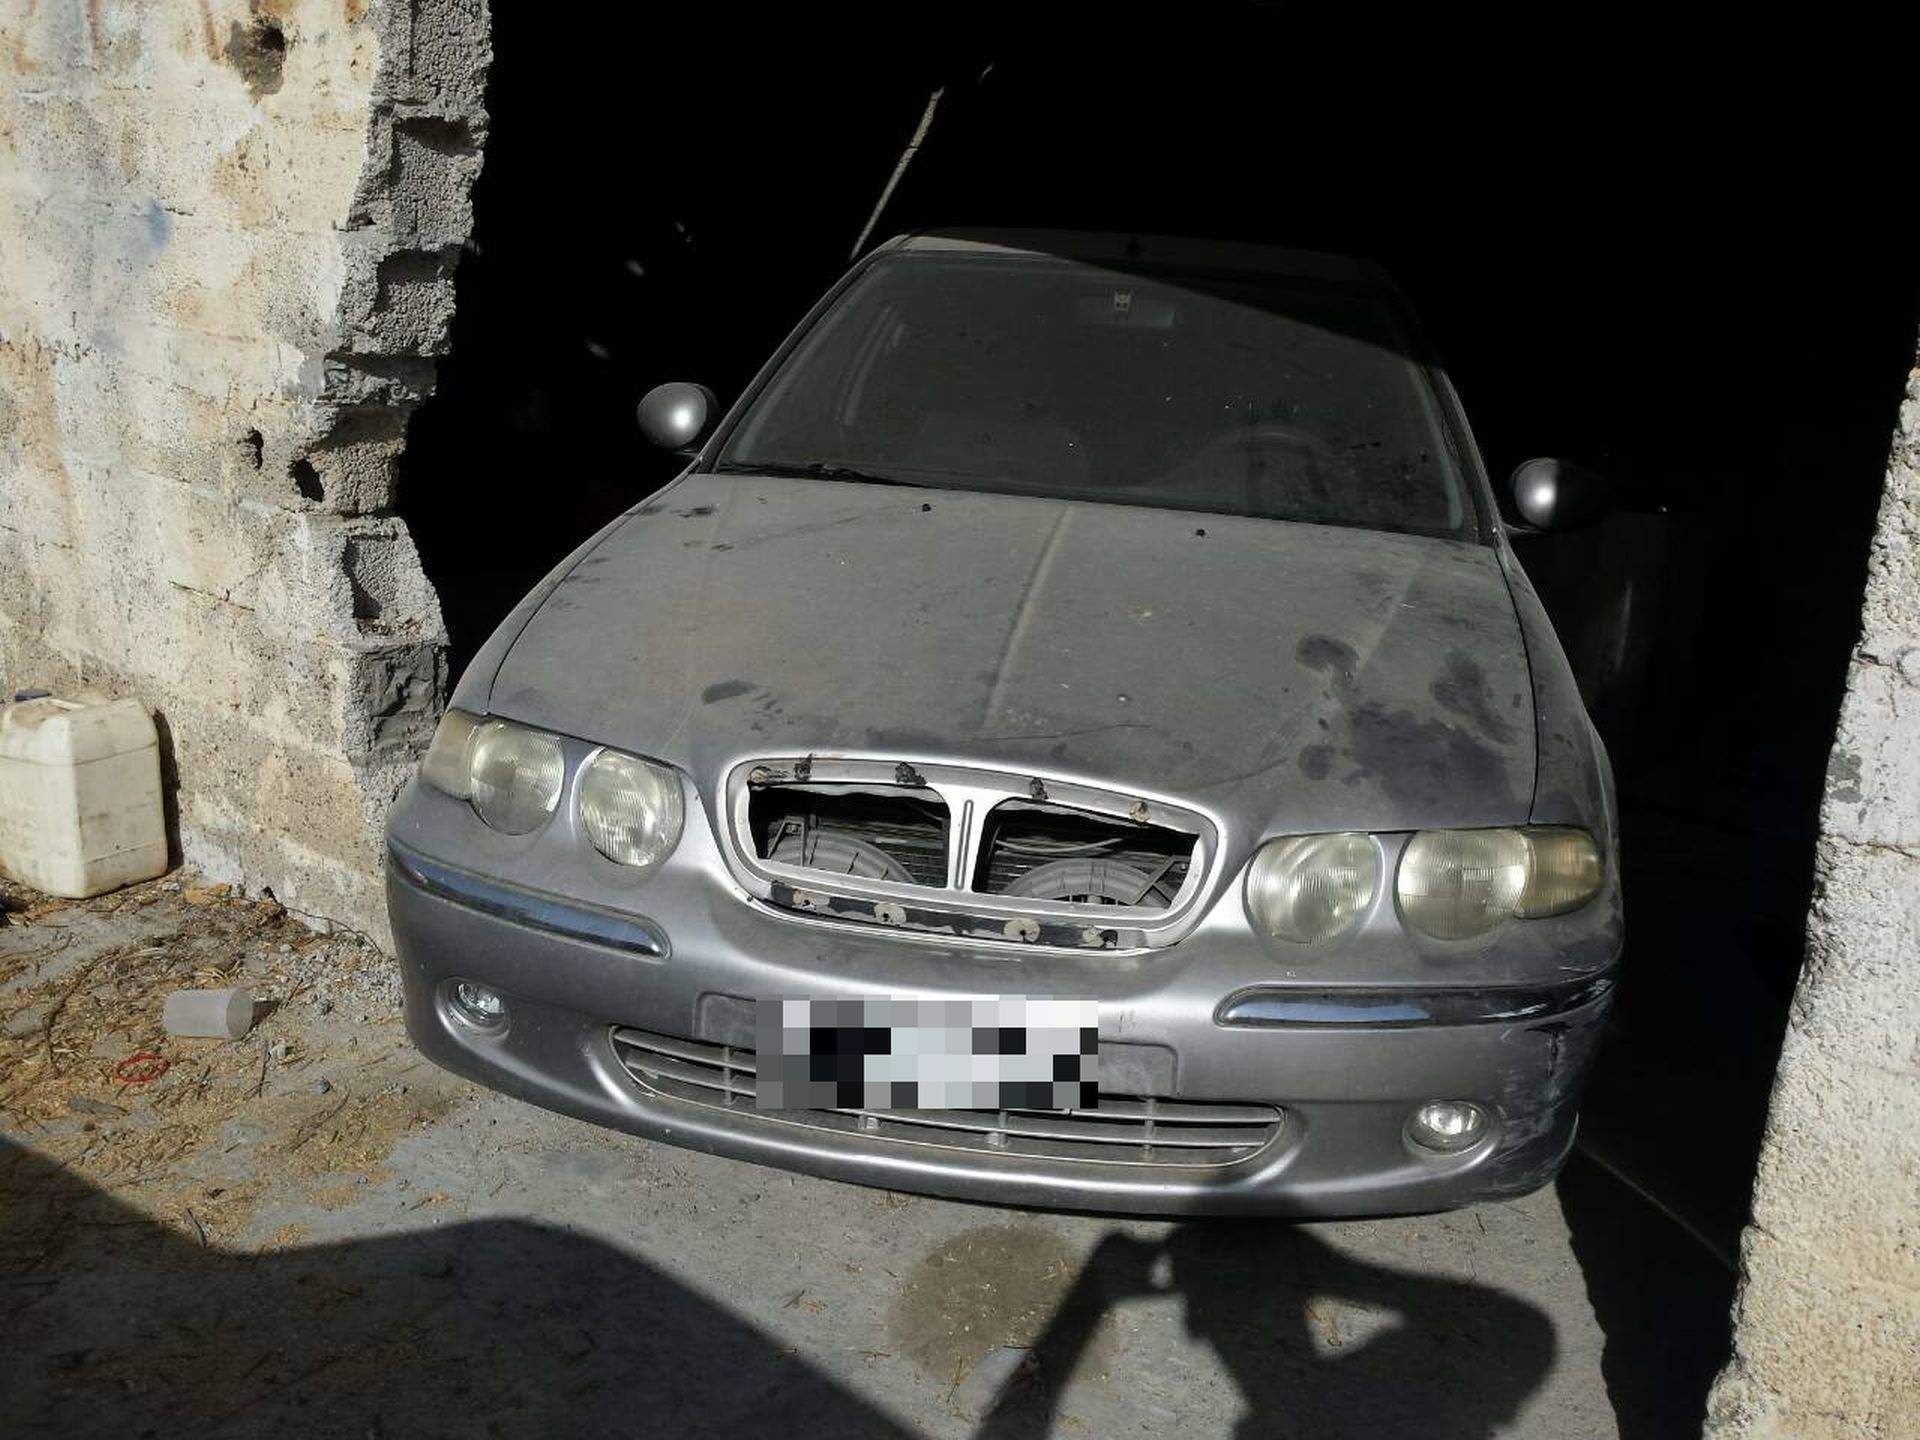 Κρήτη: Ηλικιωμένα κλεφτρόνια είχαν κλέψει ταχύπλοο, αυτοκίνητο και δίκυκλο (φωτο)